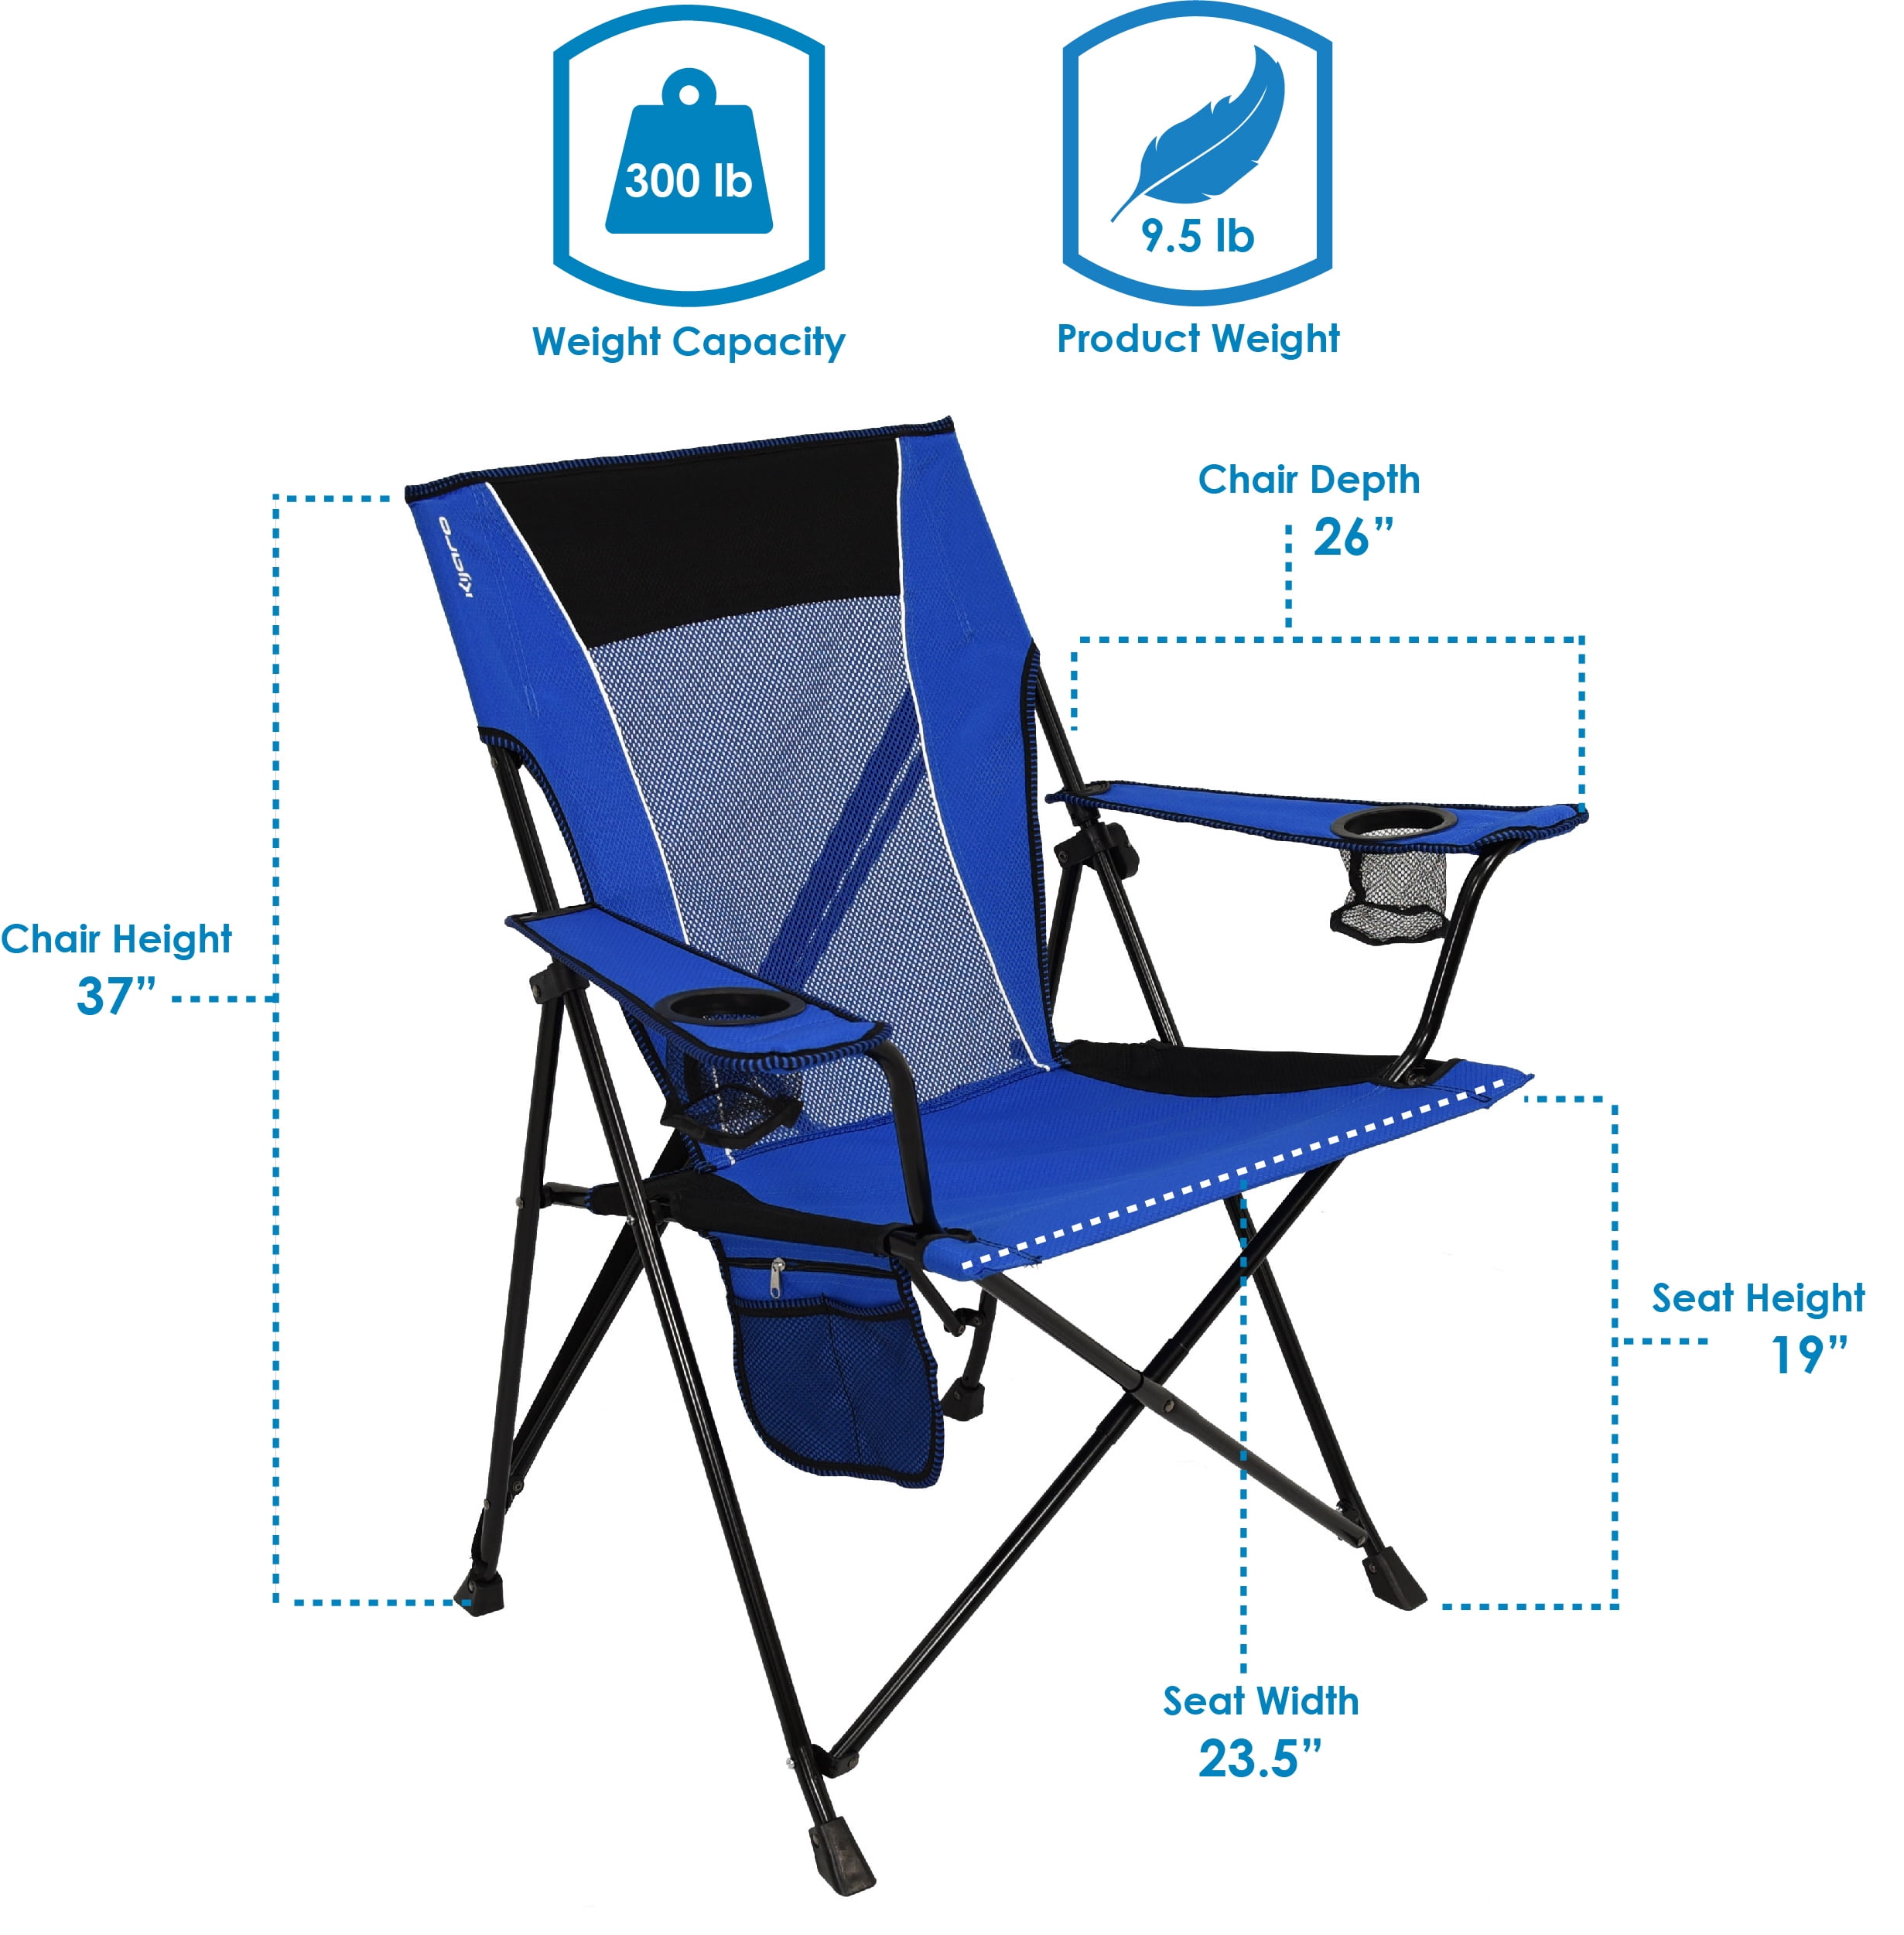 Kijaro Ionian Dual Lock Portable Camping Chair, Turquoise